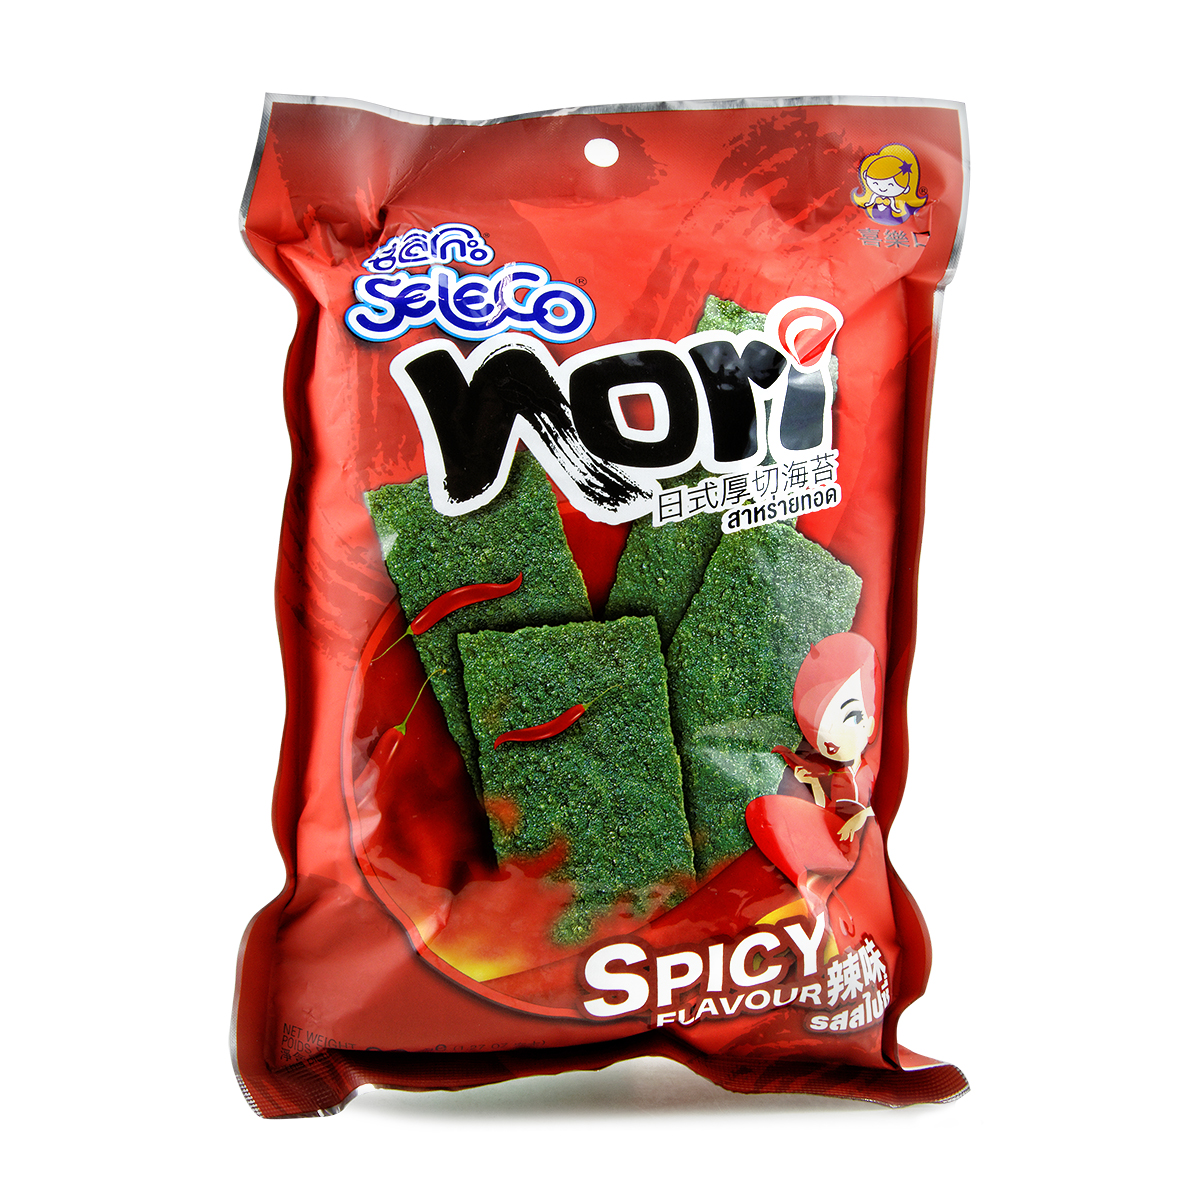 Snacks si chipsuri - Snack alge prajte Spicy SELECO 36g, asianfood.ro